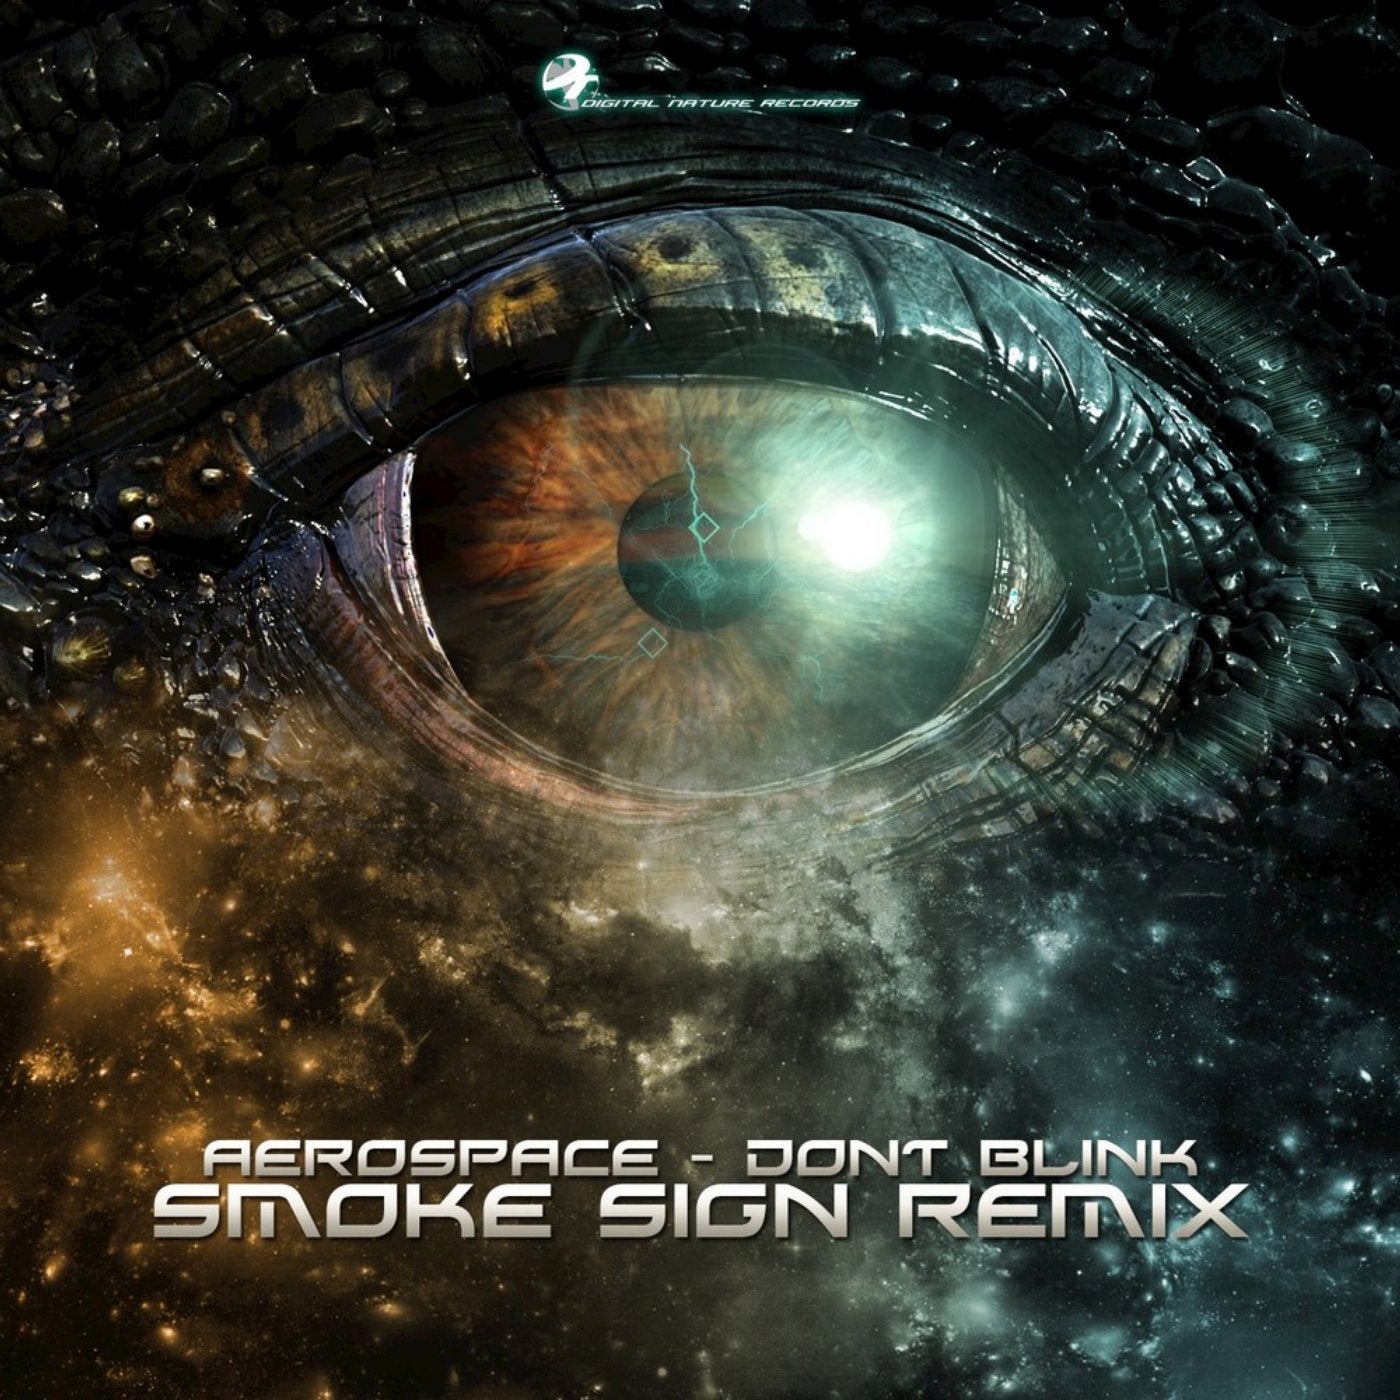 Don't Blink (Smoke Sign Remix)